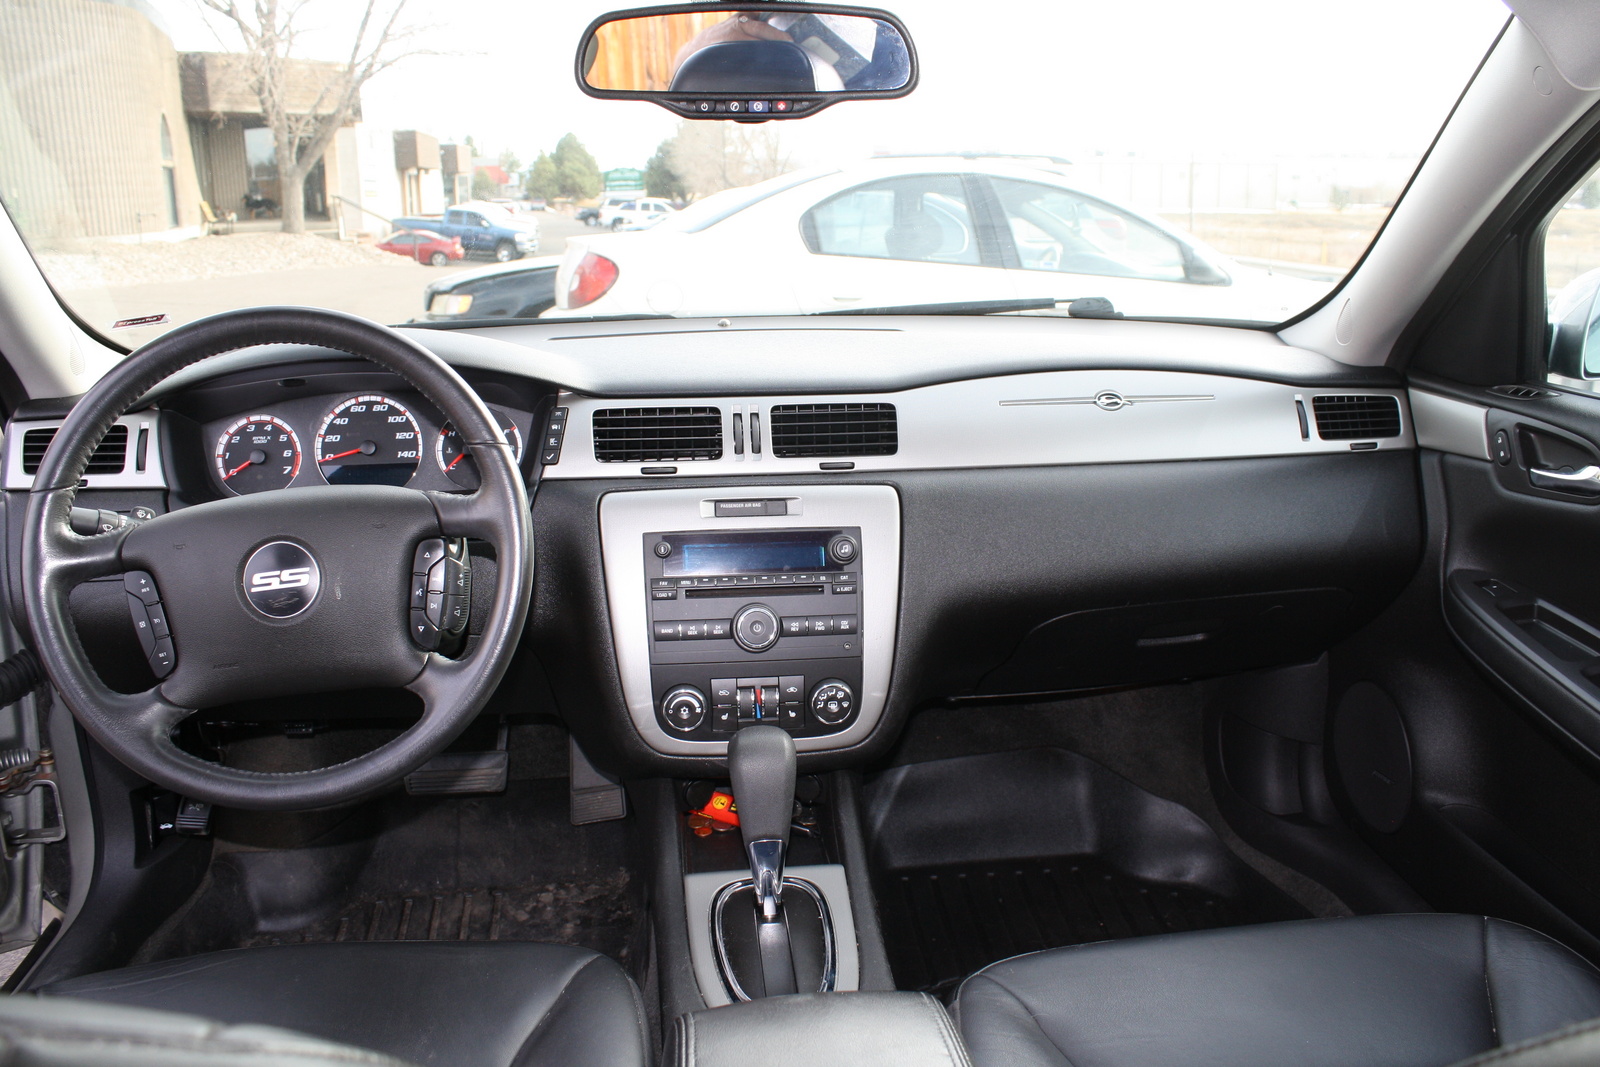 2007 Chevrolet Impala - Pictures - CarGurus